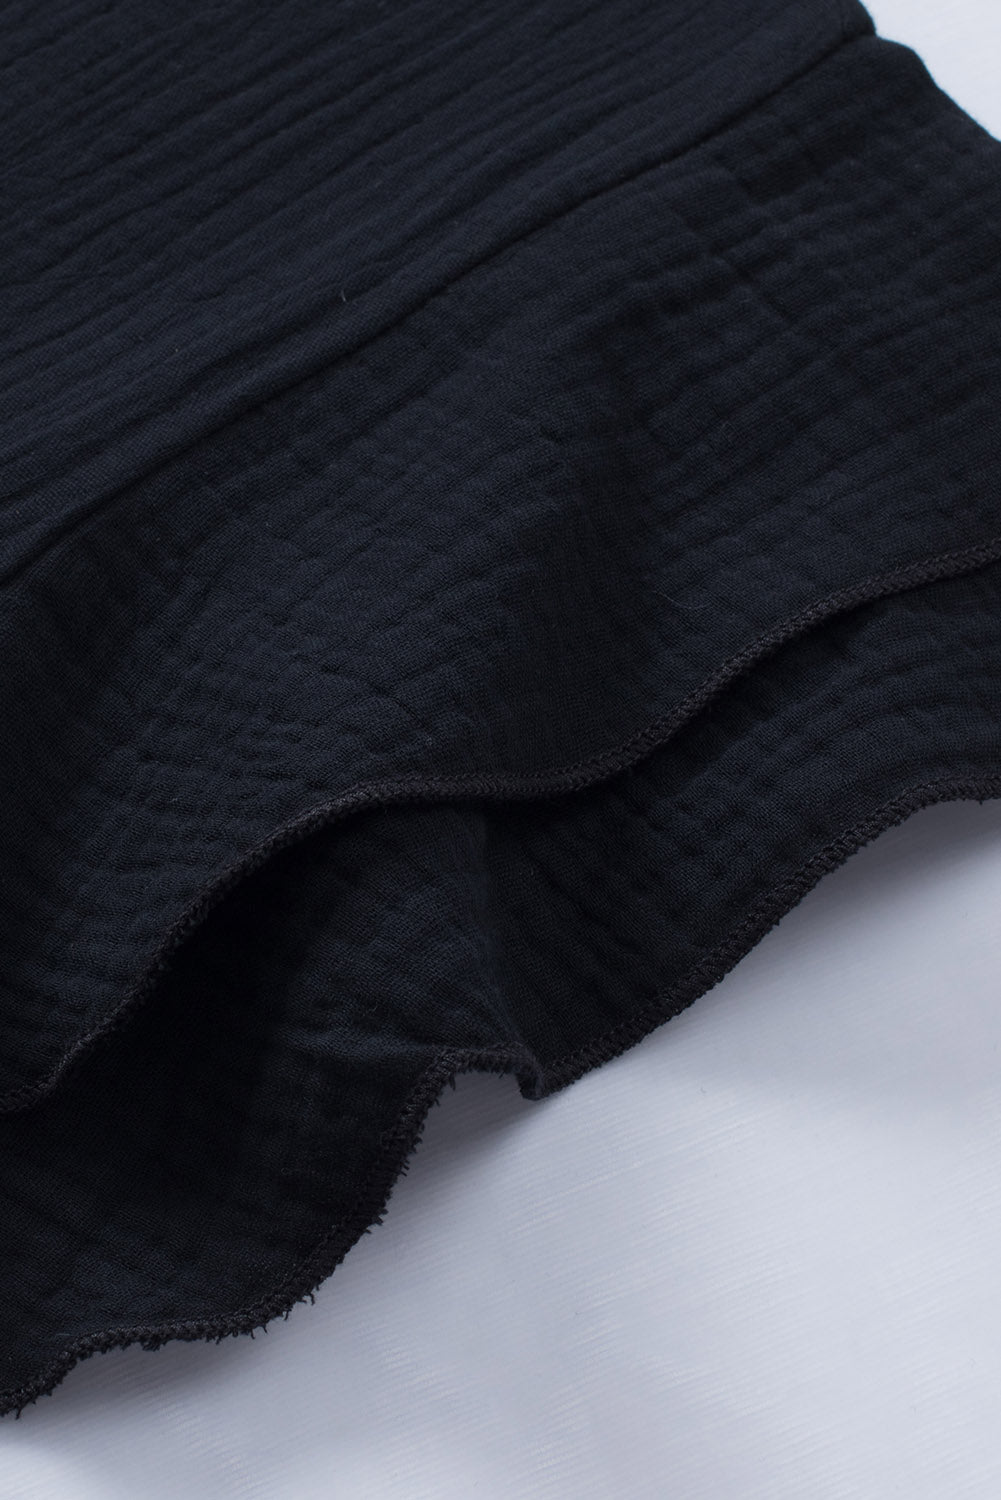 Črna teksturirana bluza s kratkimi rokavi v več stopnjah